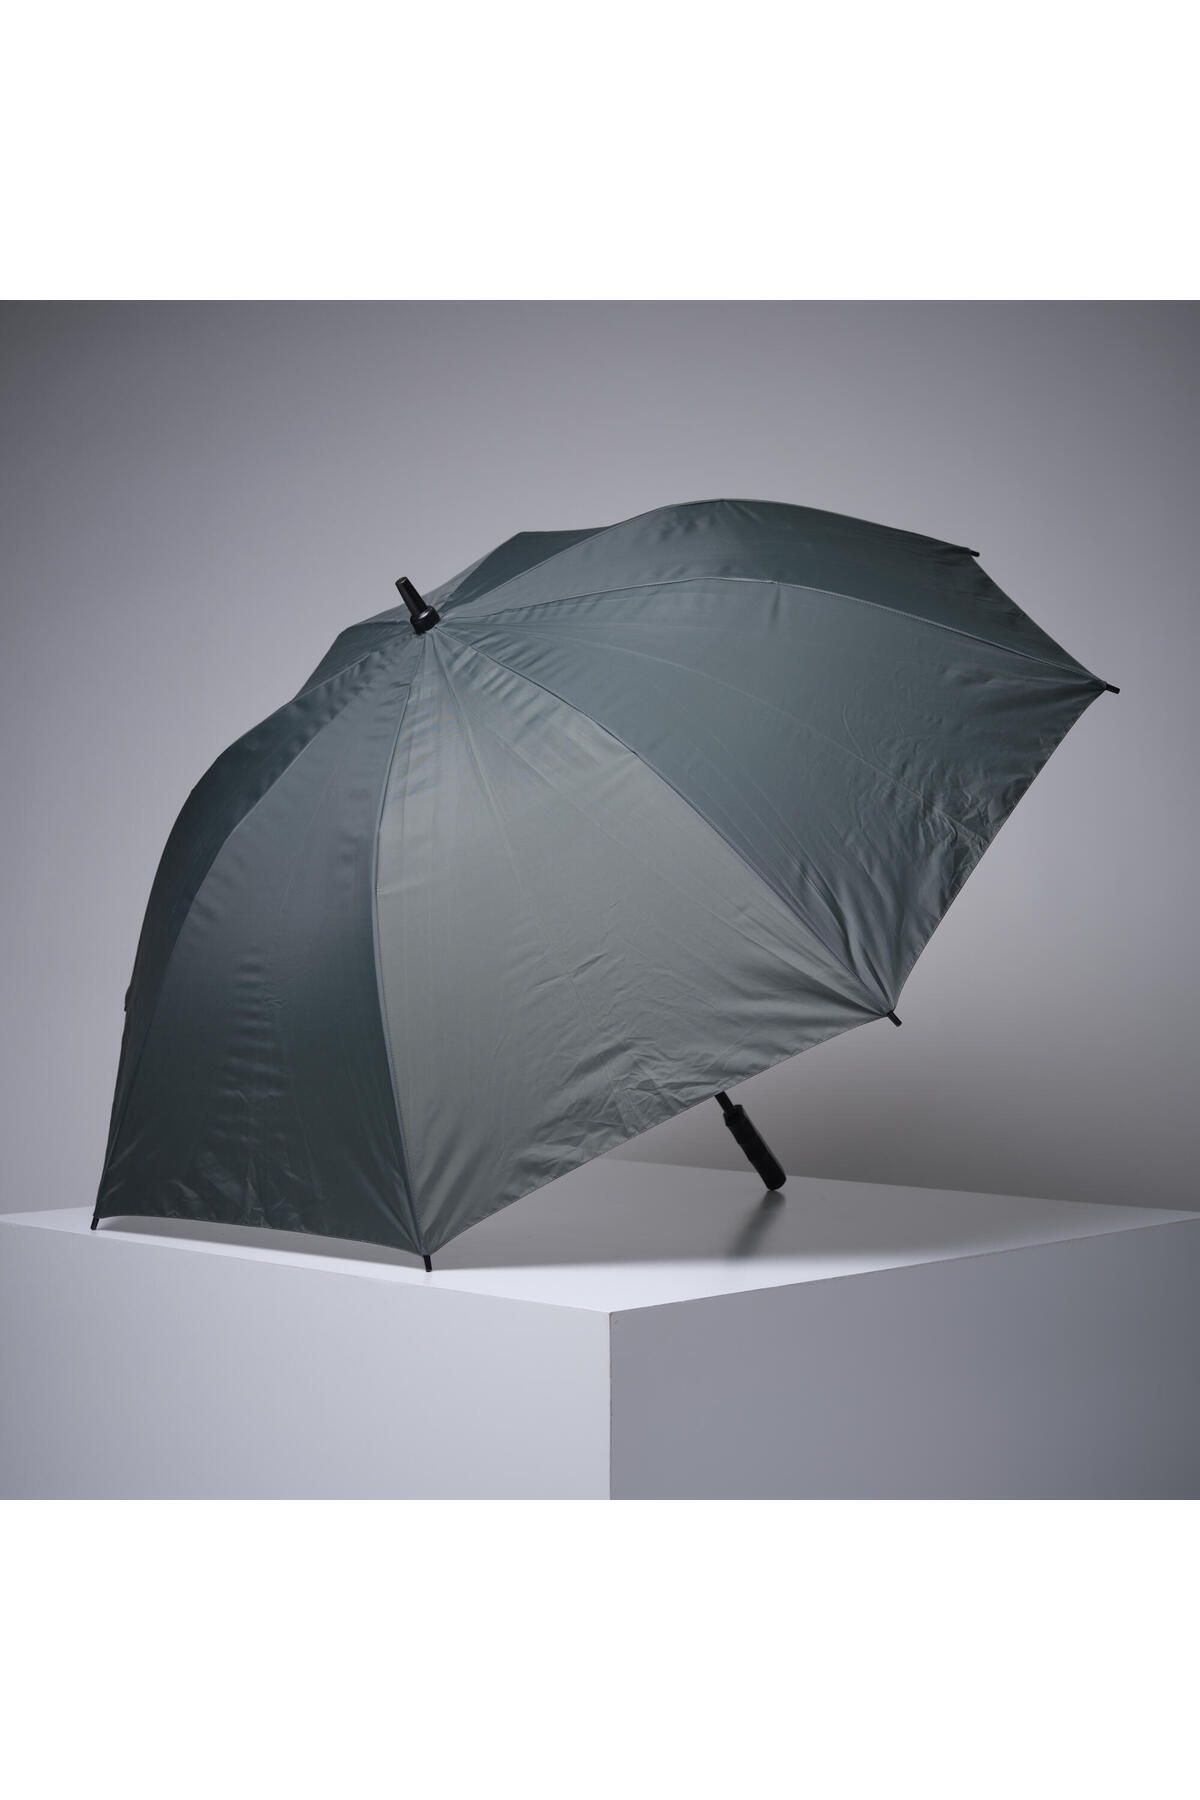 Decathlon Şemsiye - Avcılık ve Doğa Gözlemi - Yeşil - 121 cm Çap